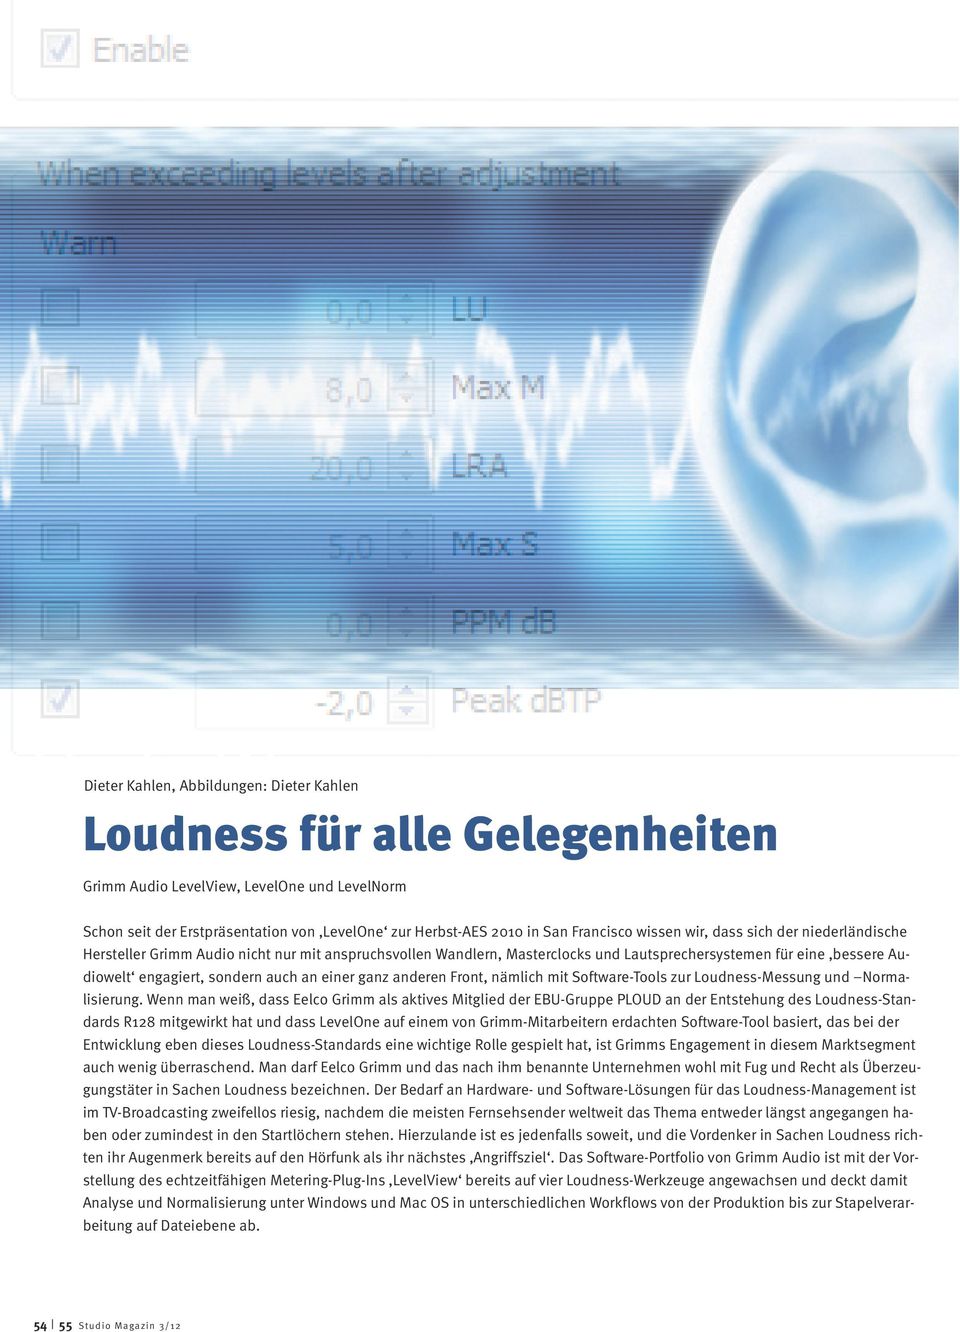 Audiowelt engagiert, sondern auch an einer ganz anderen Front, nämlich mit Software-Tools zur Loudness-Messung und Normalisierung.